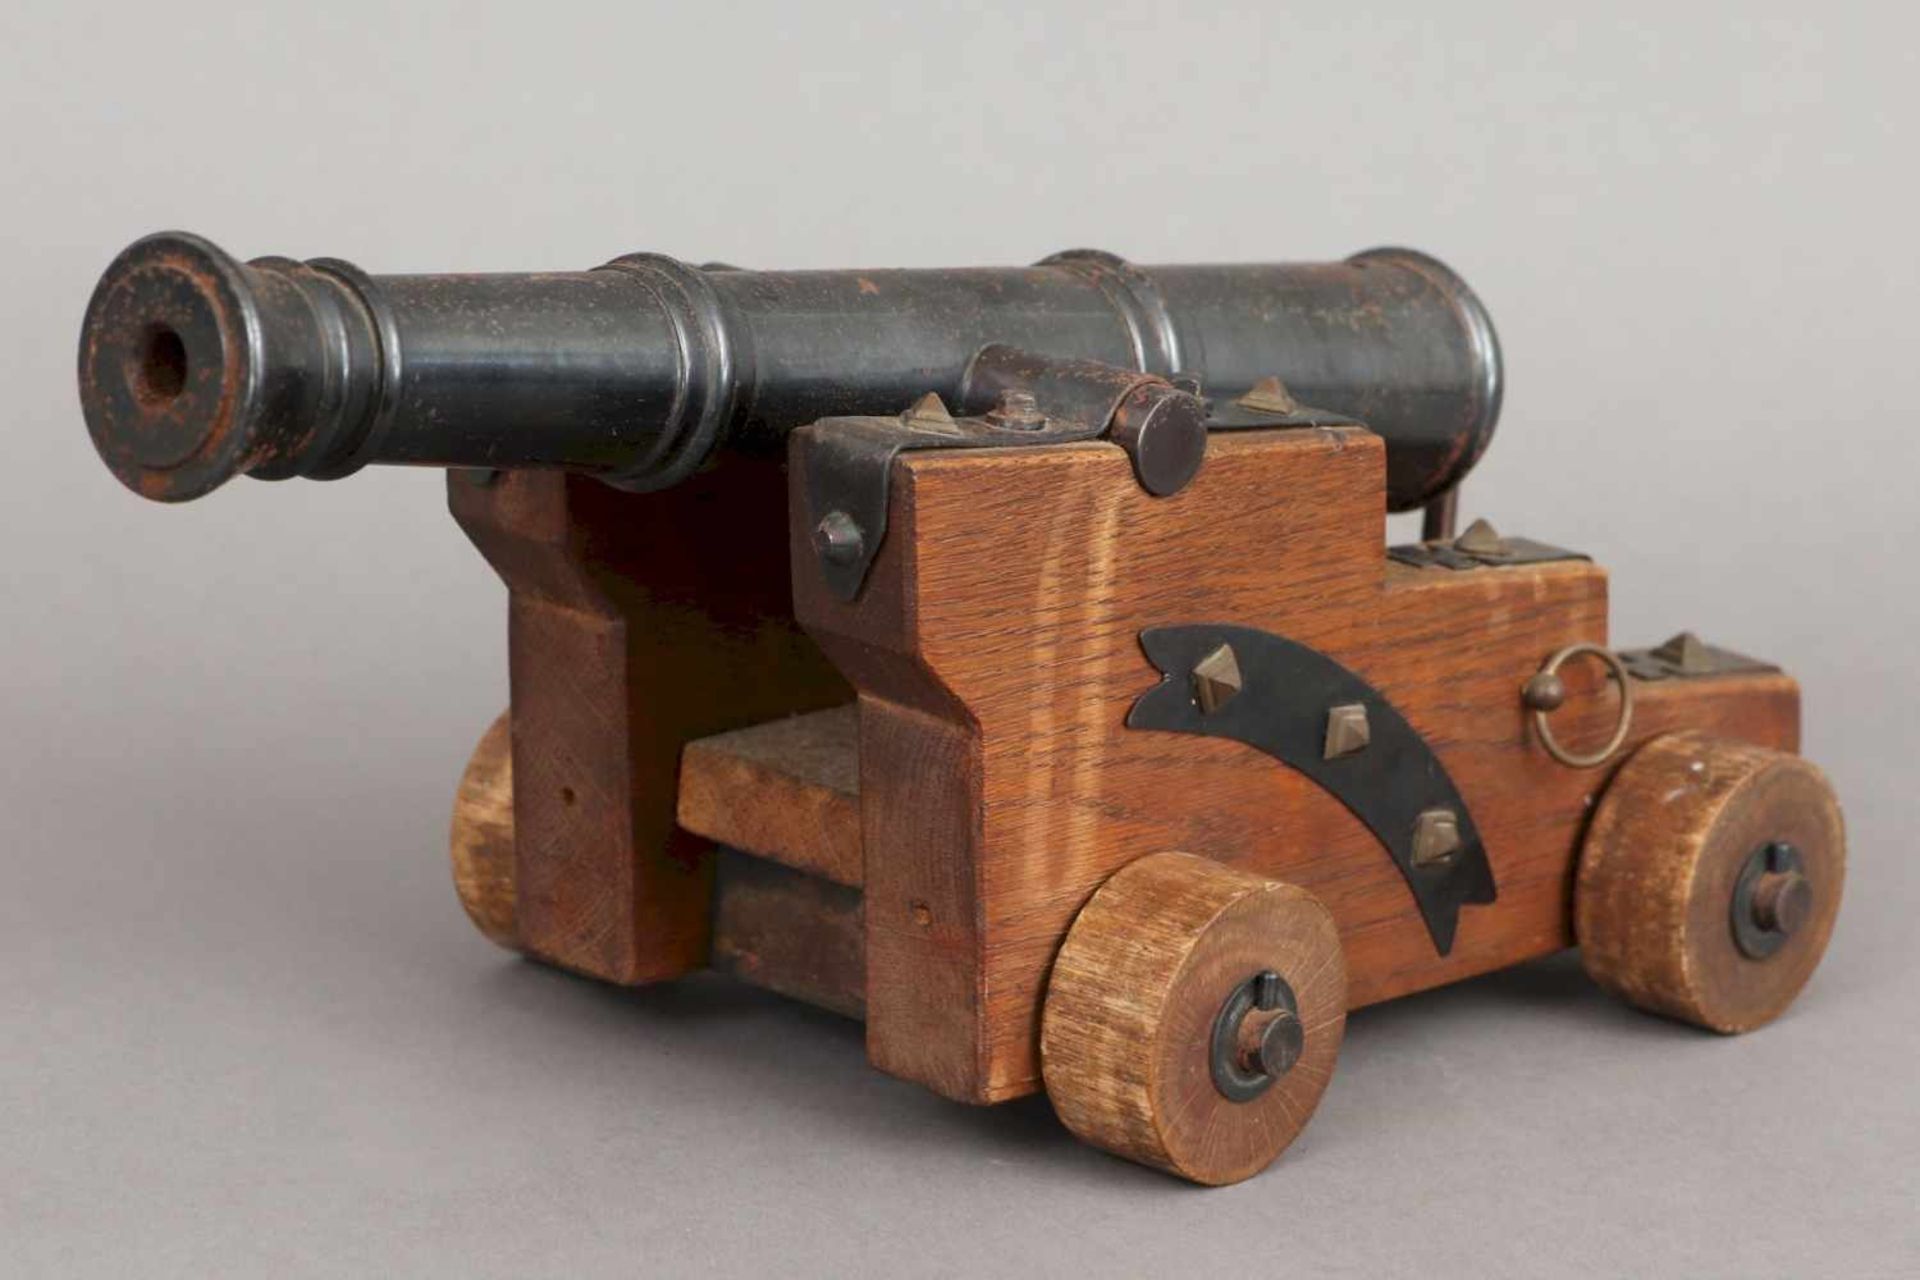 Modell Kanone Eisen, gebläut, und Eichenholz, schiessfähige Kanone auf gestuftem Holzstand mit